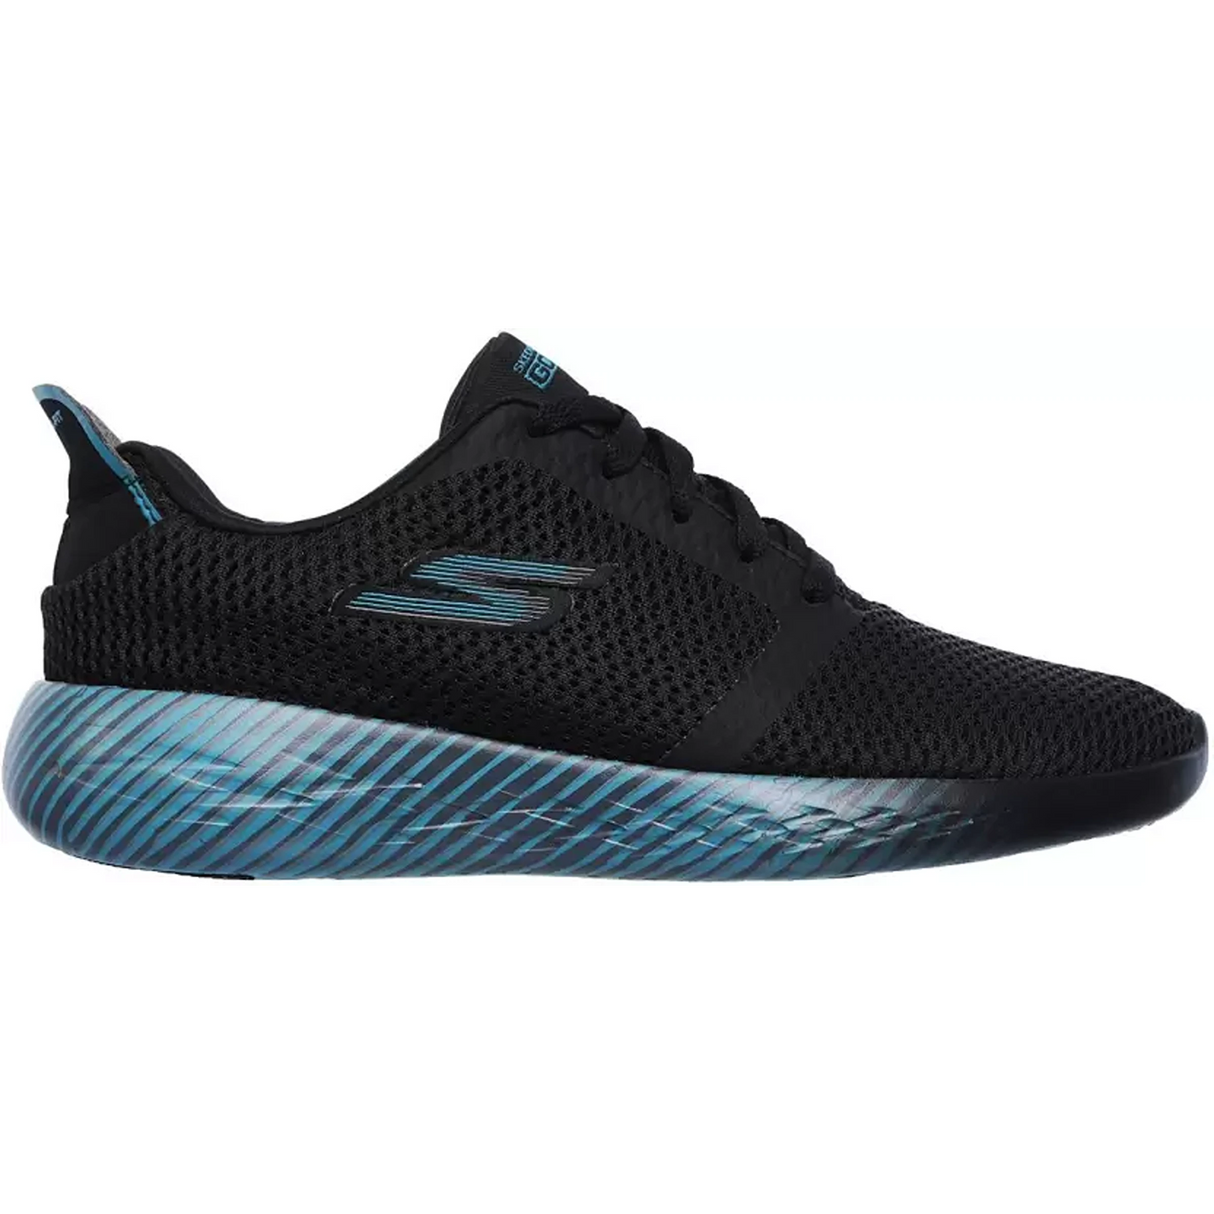 SKECHERS Go Run 600-Spectra Running Shoes For Men  (Black) (15067-BKBL)